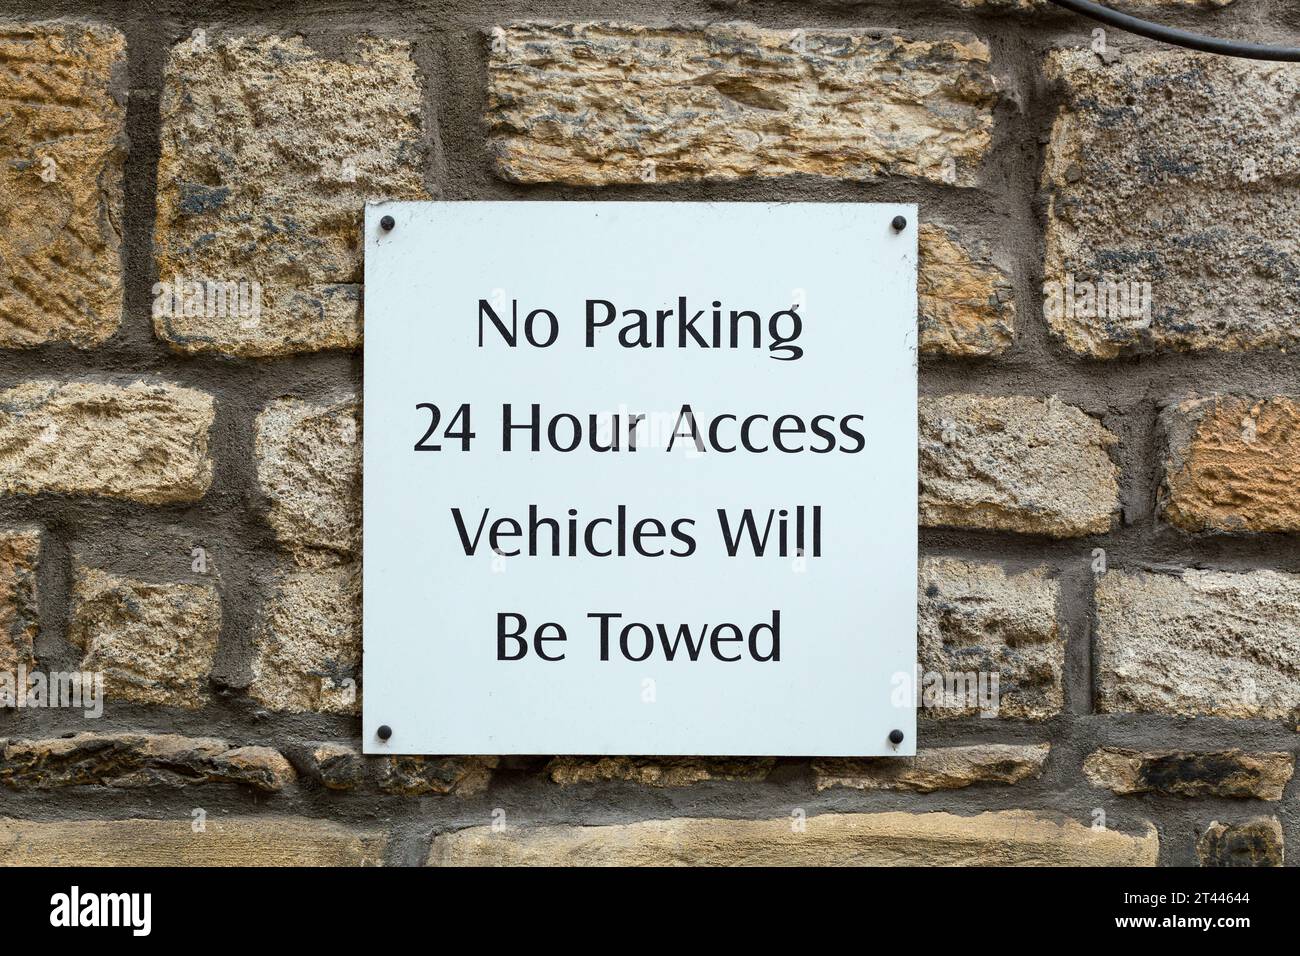 Nessun parcheggio, i veicoli con accesso 24 ore su 24 saranno trainati su un muro Foto Stock